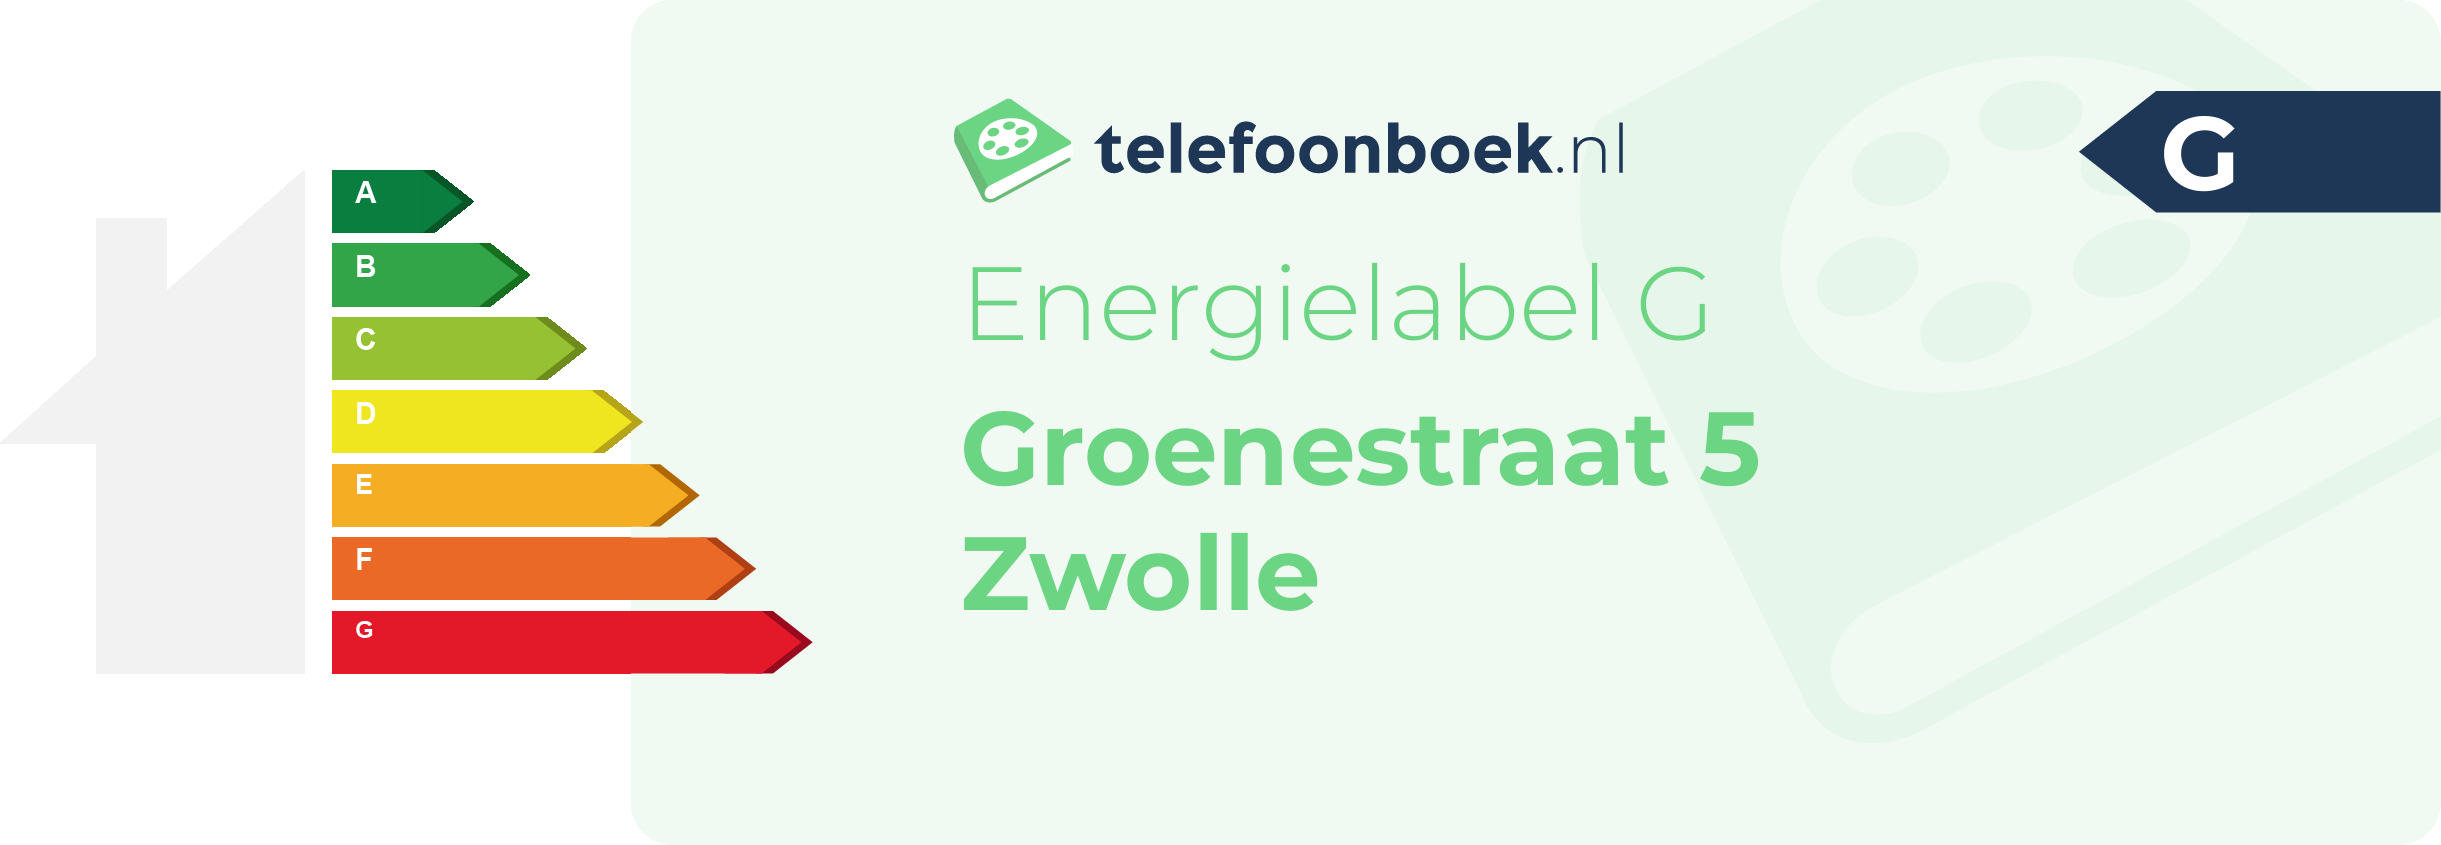 Energielabel Groenestraat 5 Zwolle